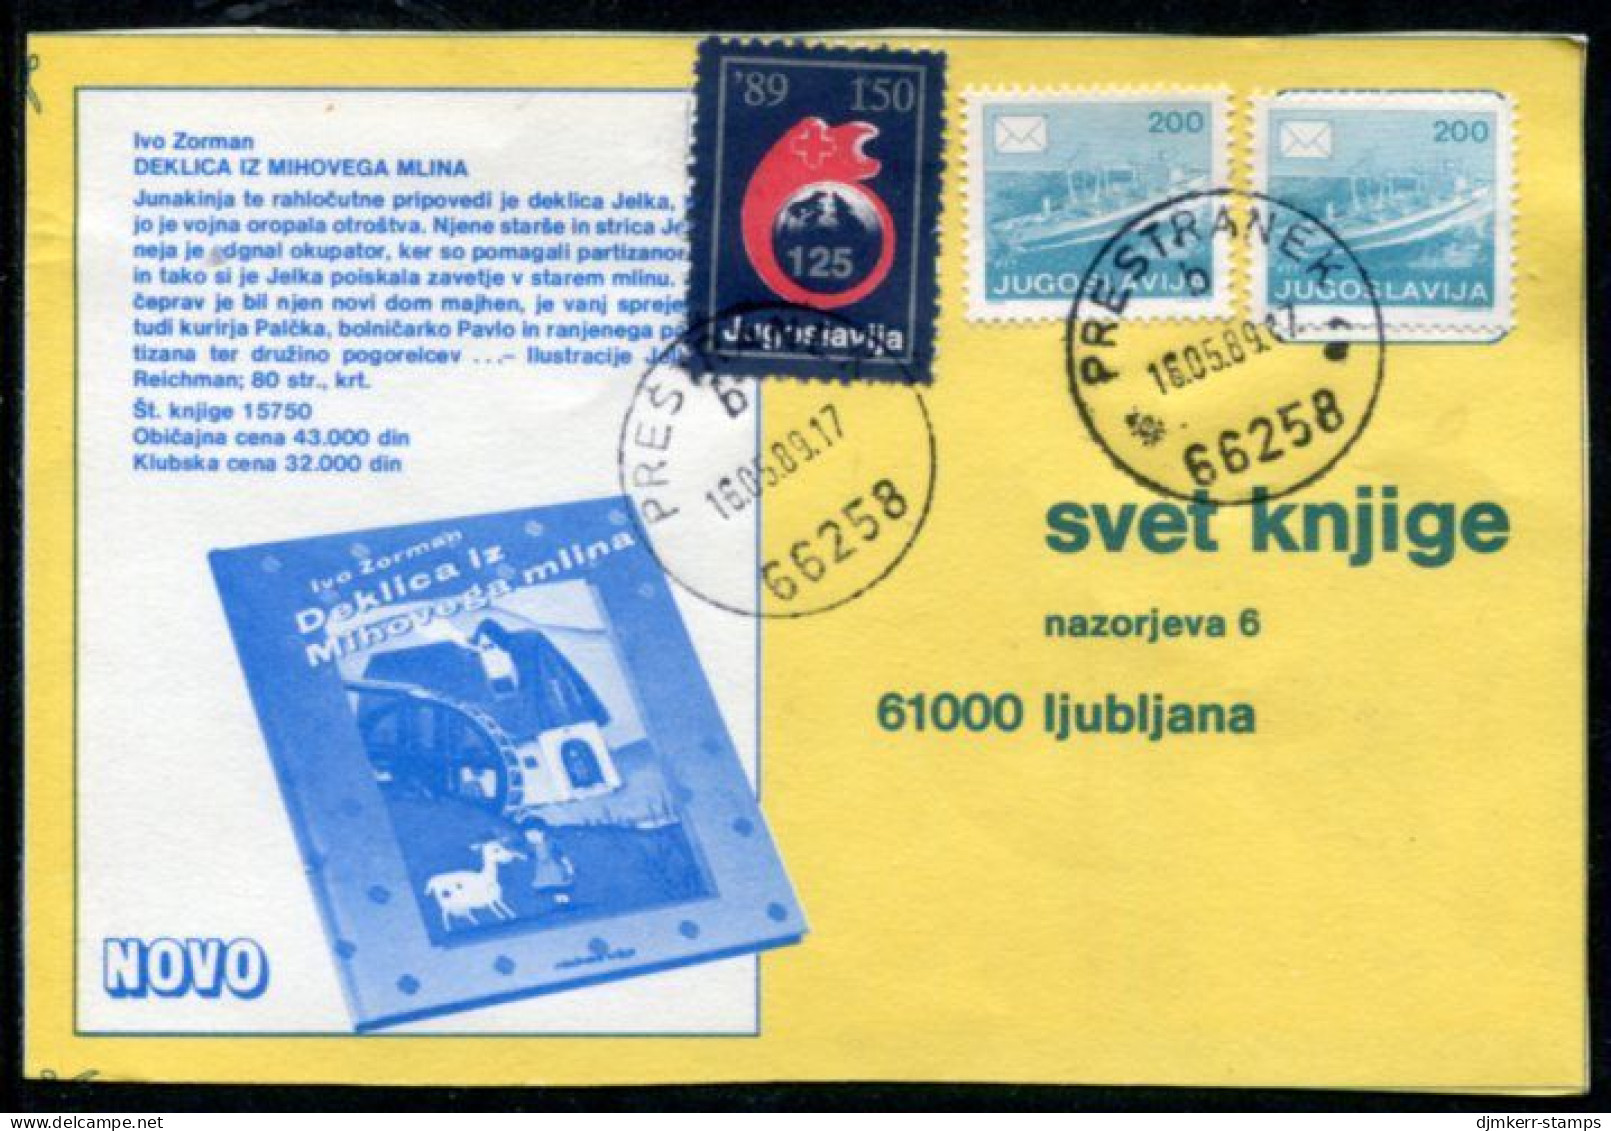 YUGOSLAVIA 1989 Red Cross Week 150 D. Tax Used On Commercial Postcard.  Michel ZZM 168 - Wohlfahrtsmarken